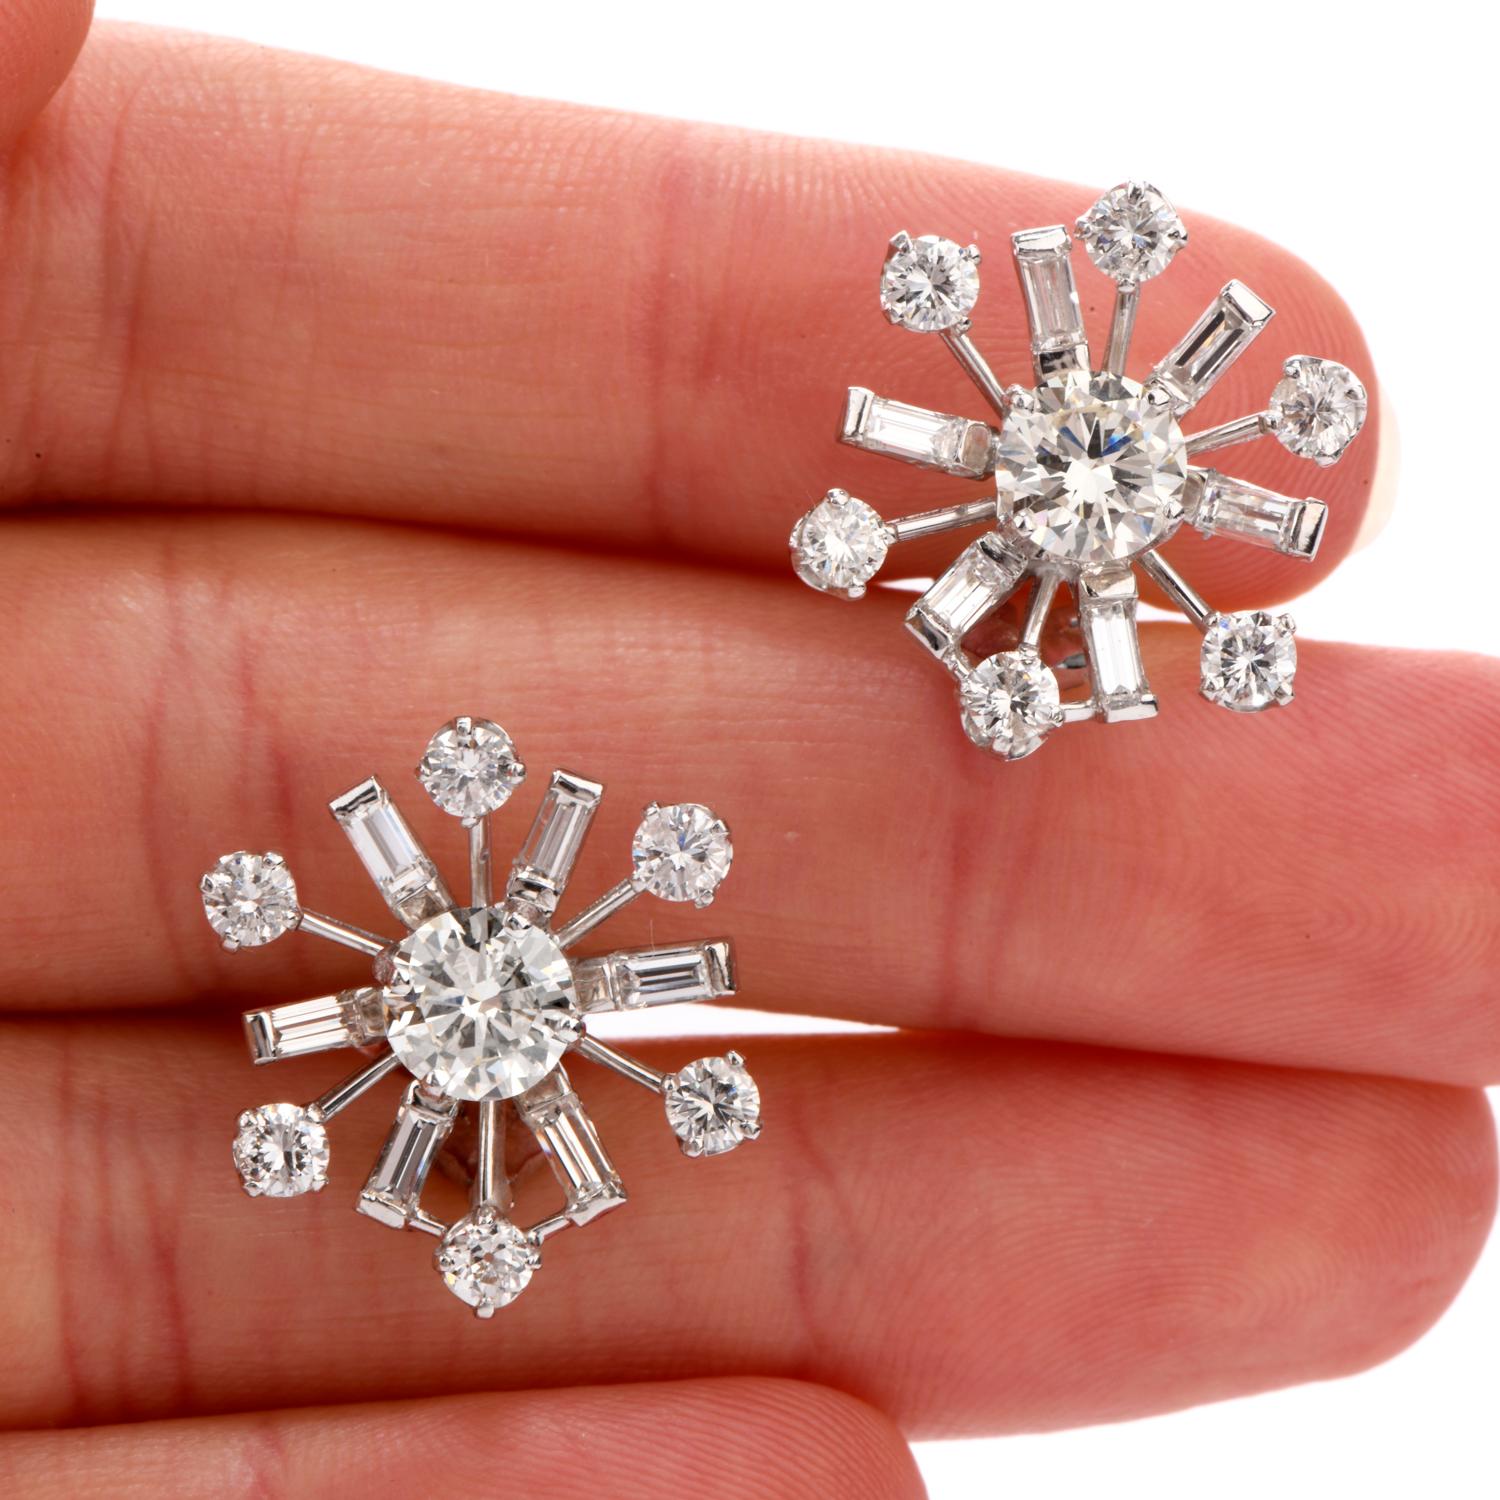 Feurige weiße Diamanten im Rund- und Baguetteschliff schmücken dieses Vintage-Modell aus den 1960er Jahren.  Ohrringe mit Pinwheel-Motiv.  Sie sind aus Platin gefertigt und messen ca. 20,24 mm.

Hervorgehoben in der Mitte jeder ist 1 runder